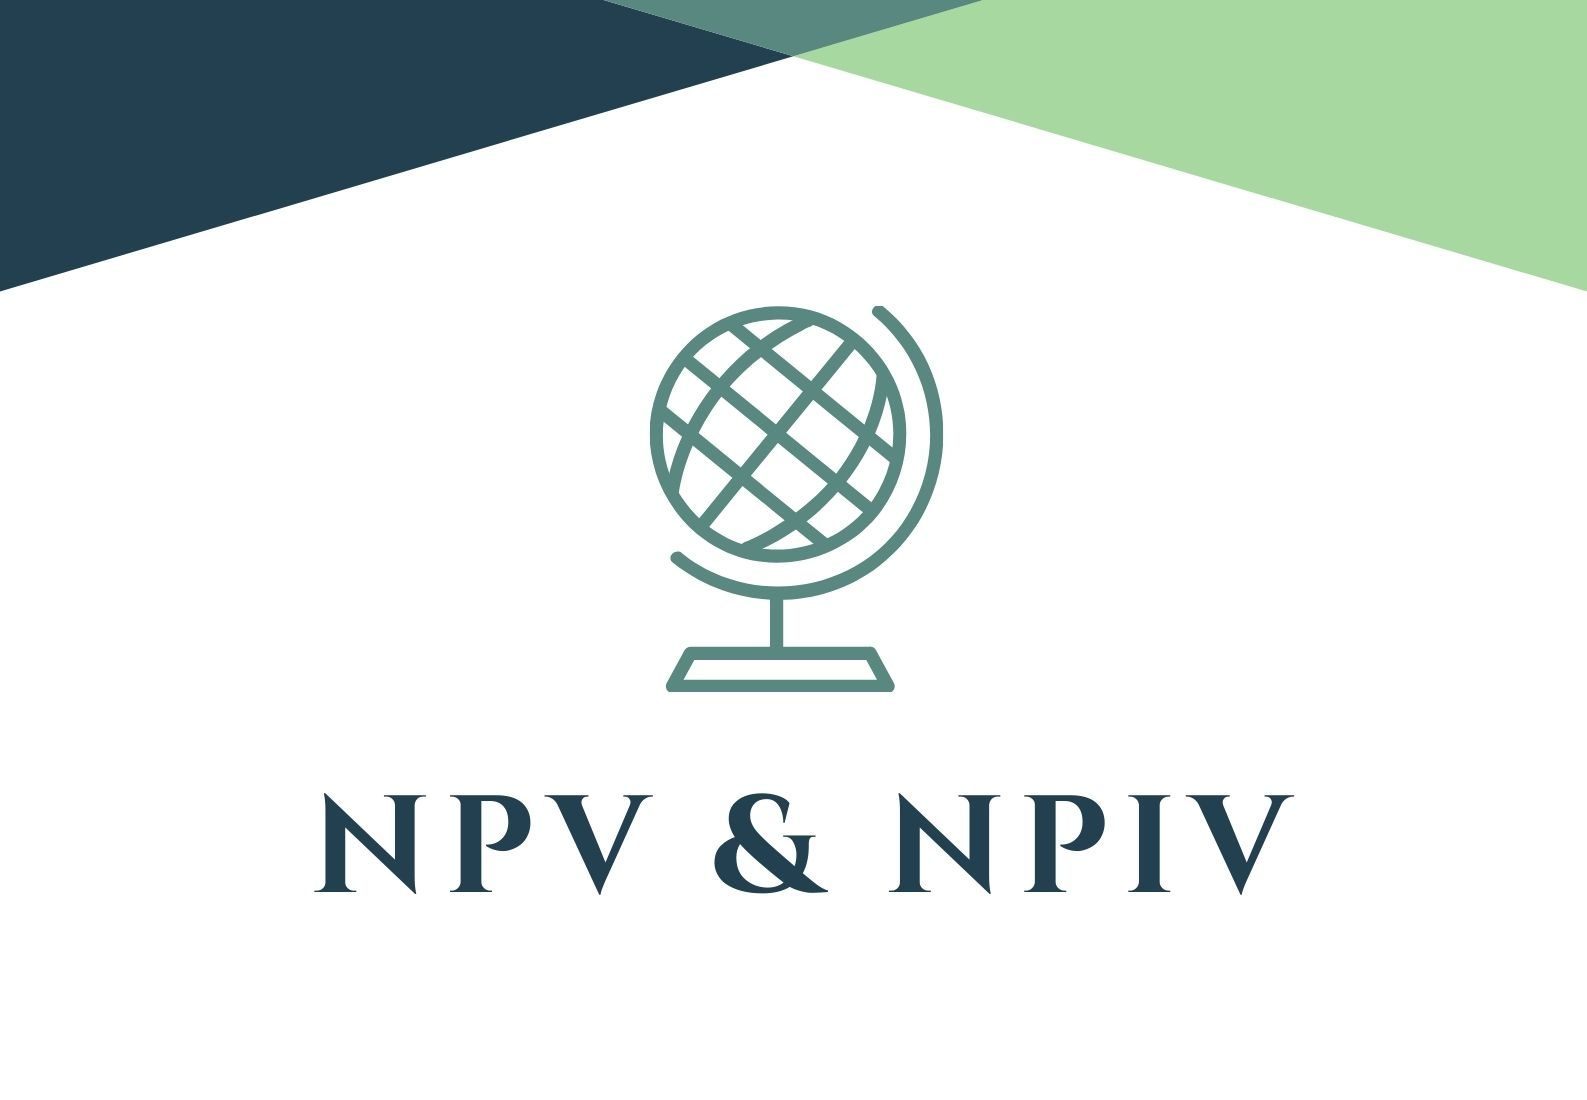 NPV & NPIV explained